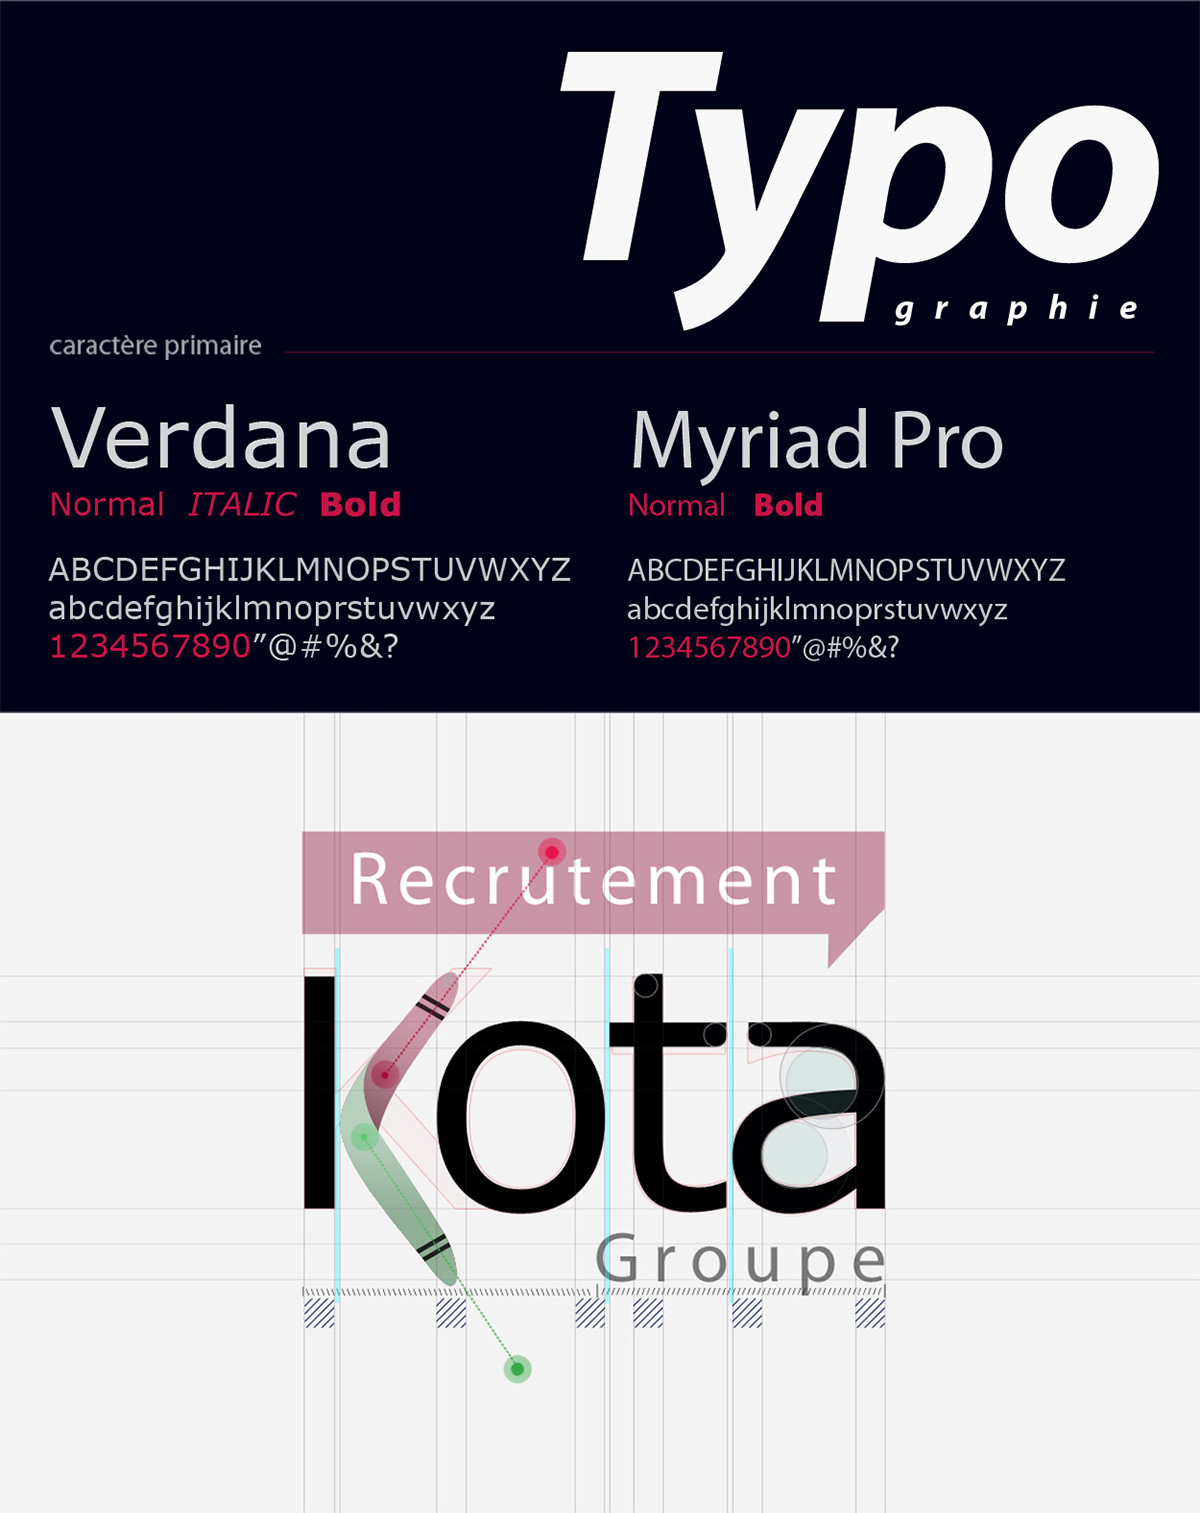 kota group Logo Design charte graphique